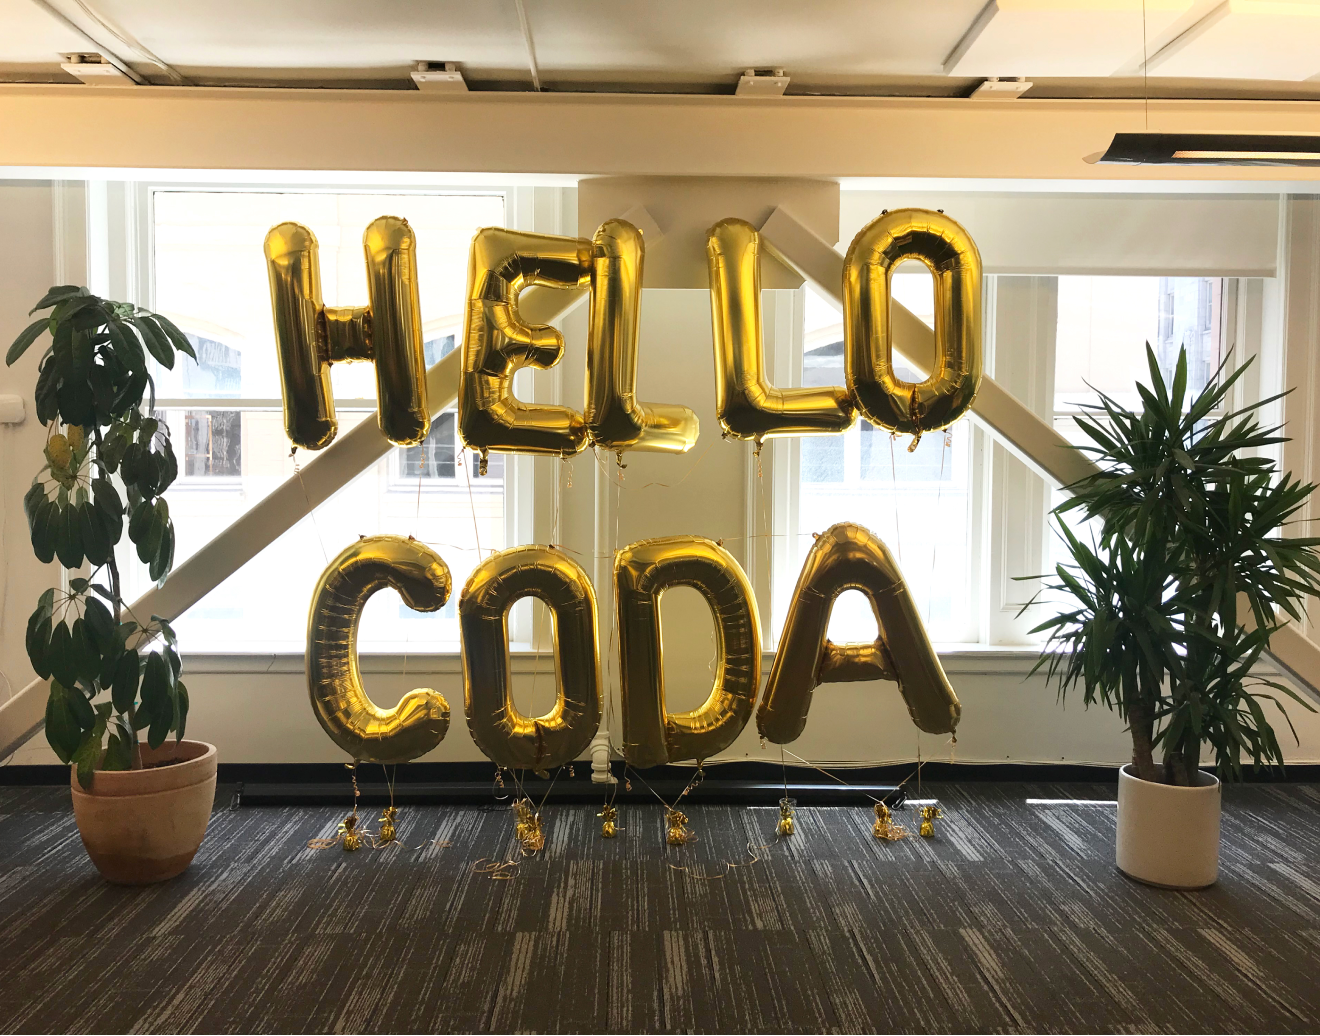 Hello Coda balloons